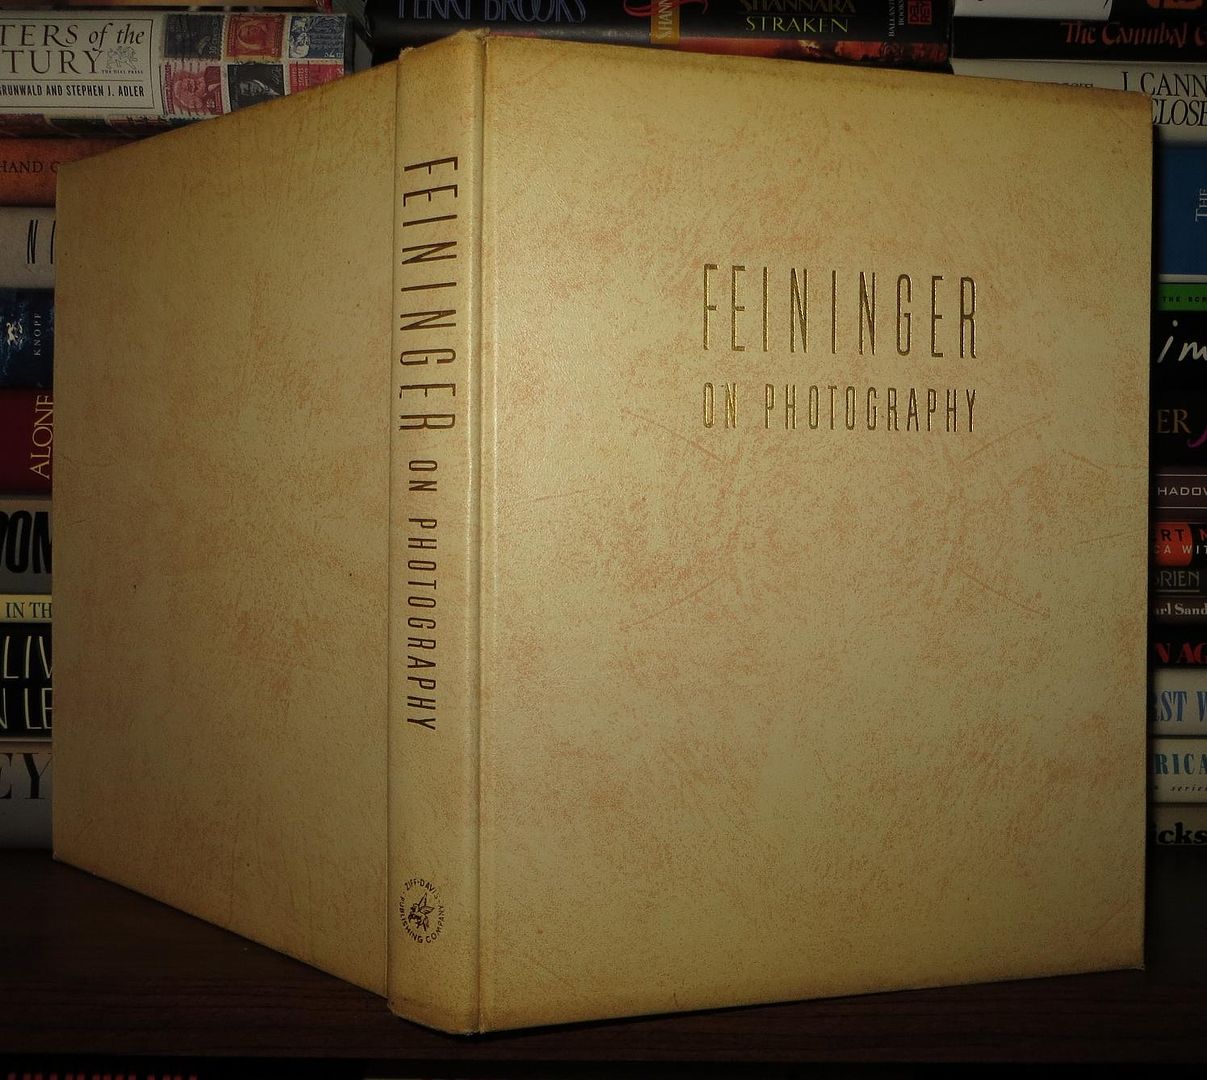 FEININGER, ANDREAS - Feininger on Photography